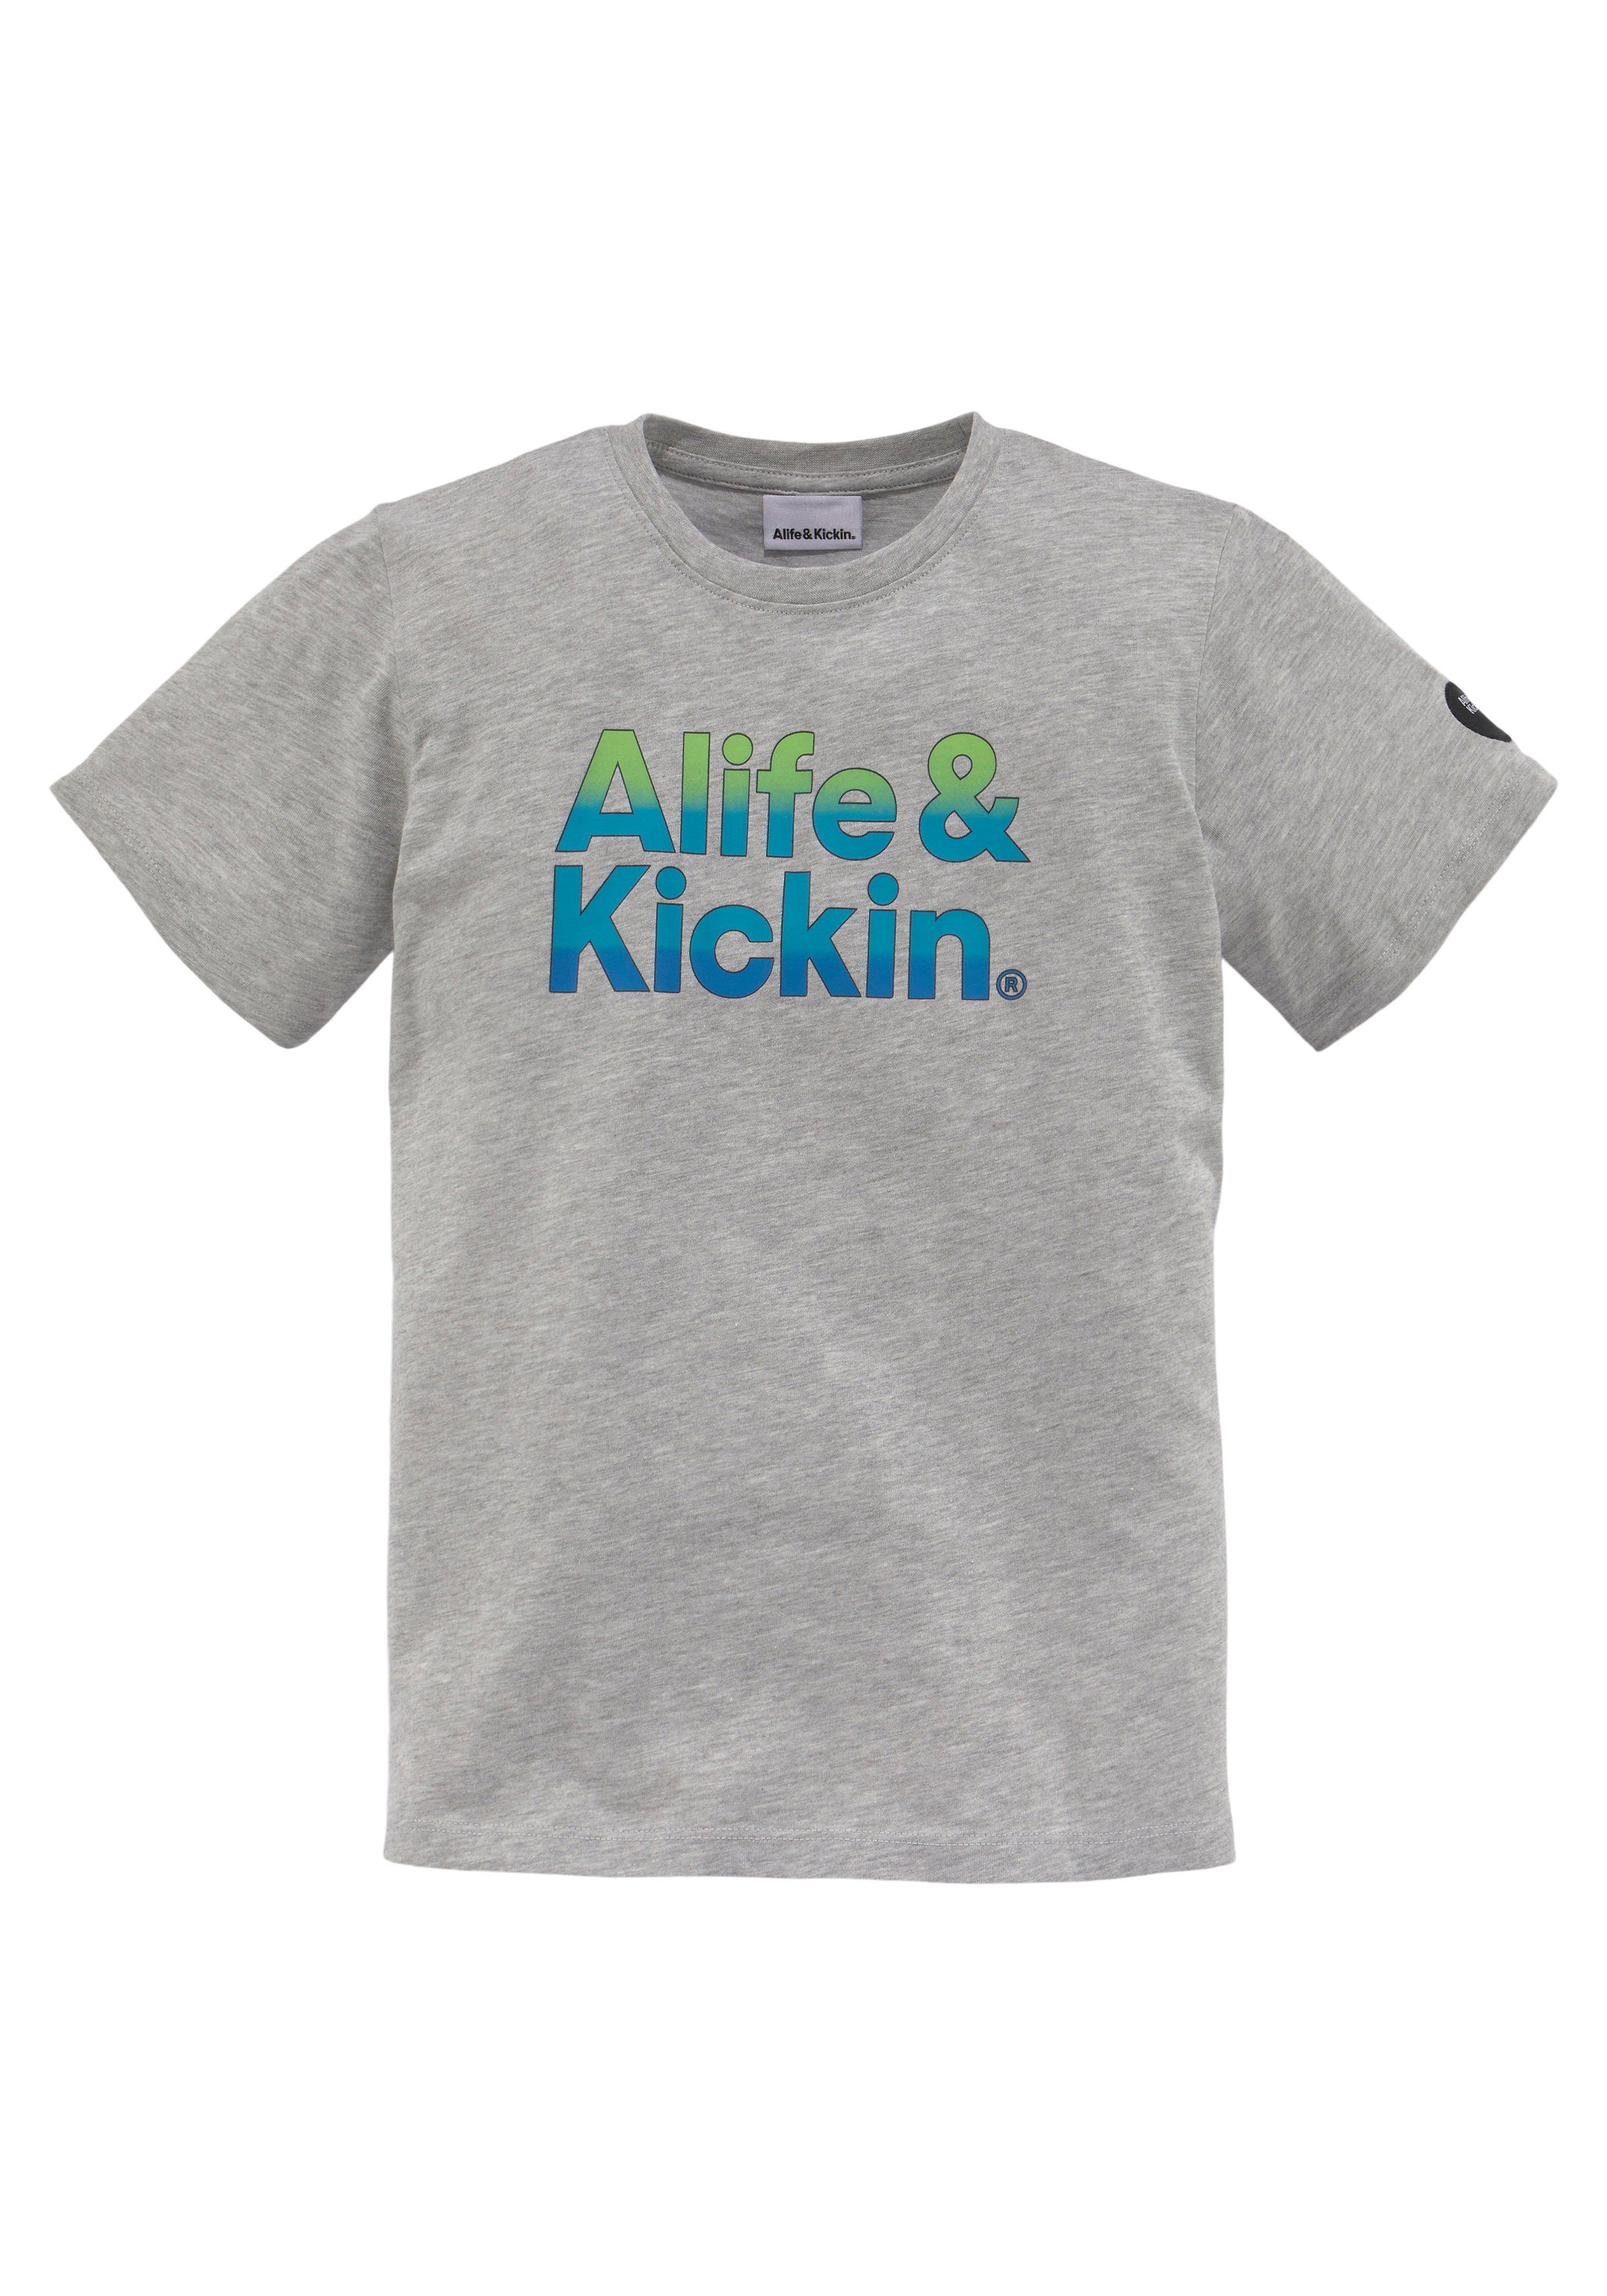 Alife & für Logo-Print melierter T-Shirt NEUE in Kids Alife&Kickin Qualität, MARKE! Kickin